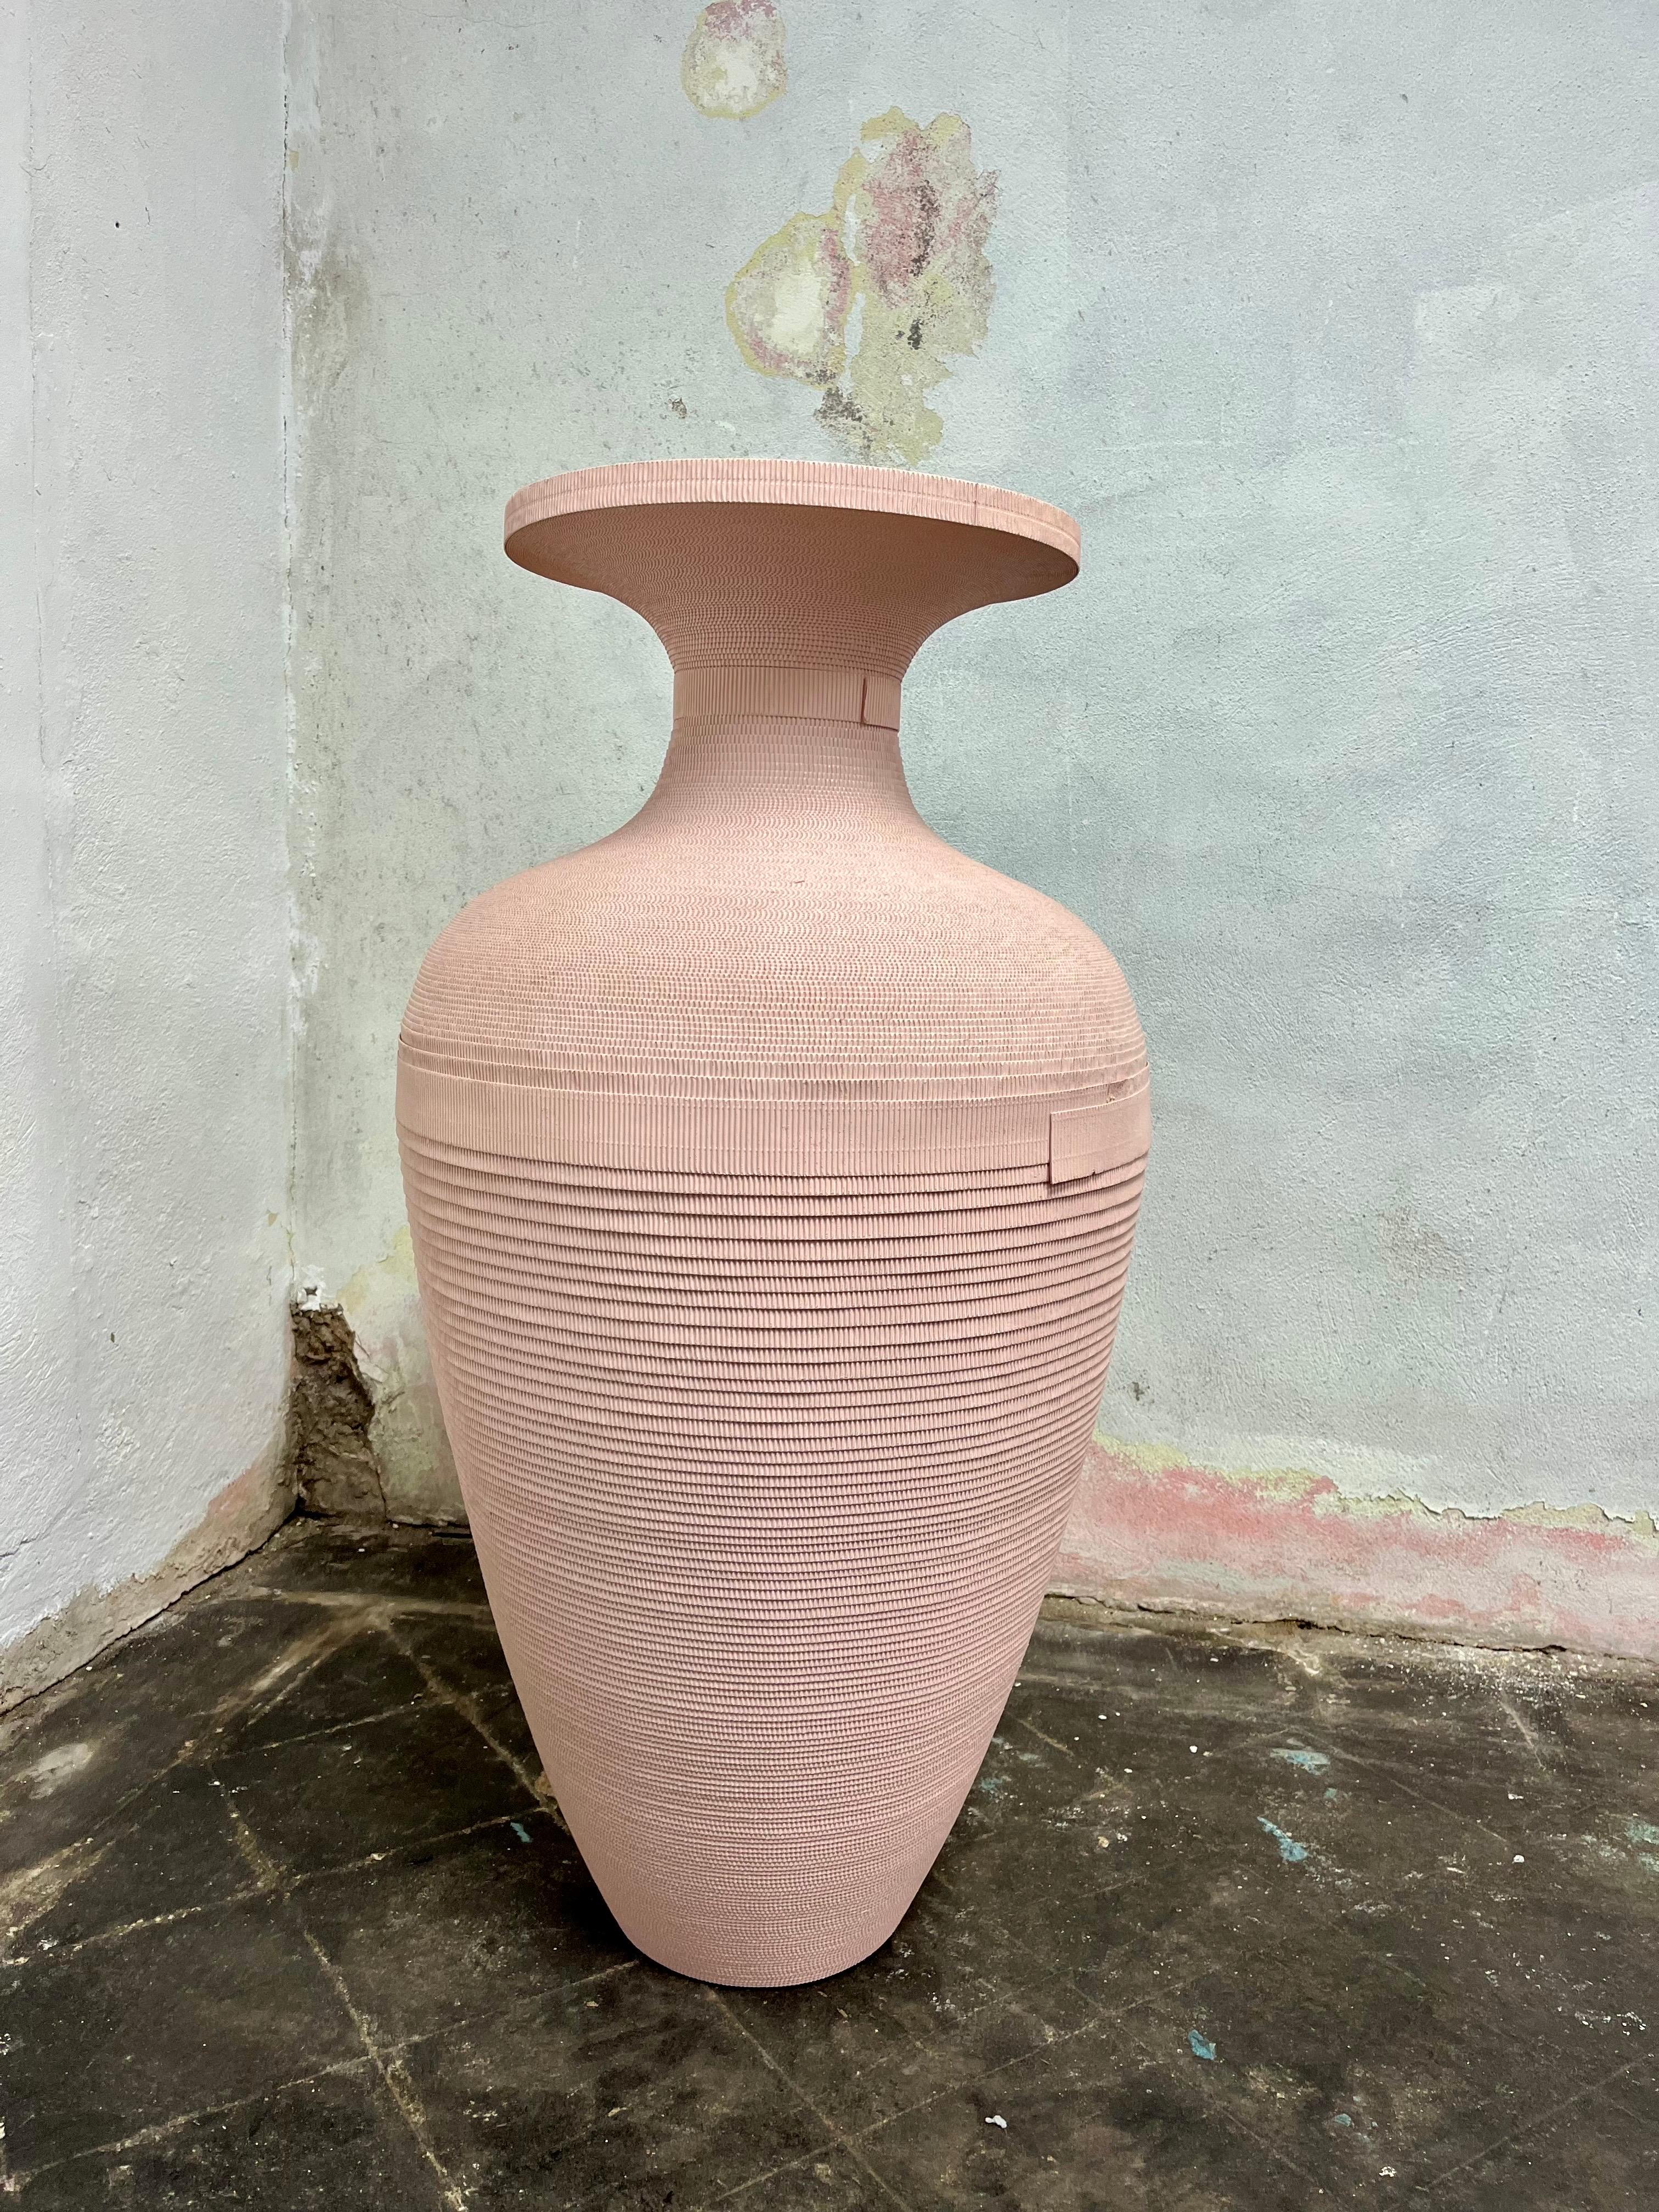 Exceptionnel vase de sol postmoderne de Flute Chicago. Couleur mauve ou rose doux. Beau mouvement dans le design avec une influence grecque cannelée. Grande taille.
En bordure de route vers NYC/Philly $350